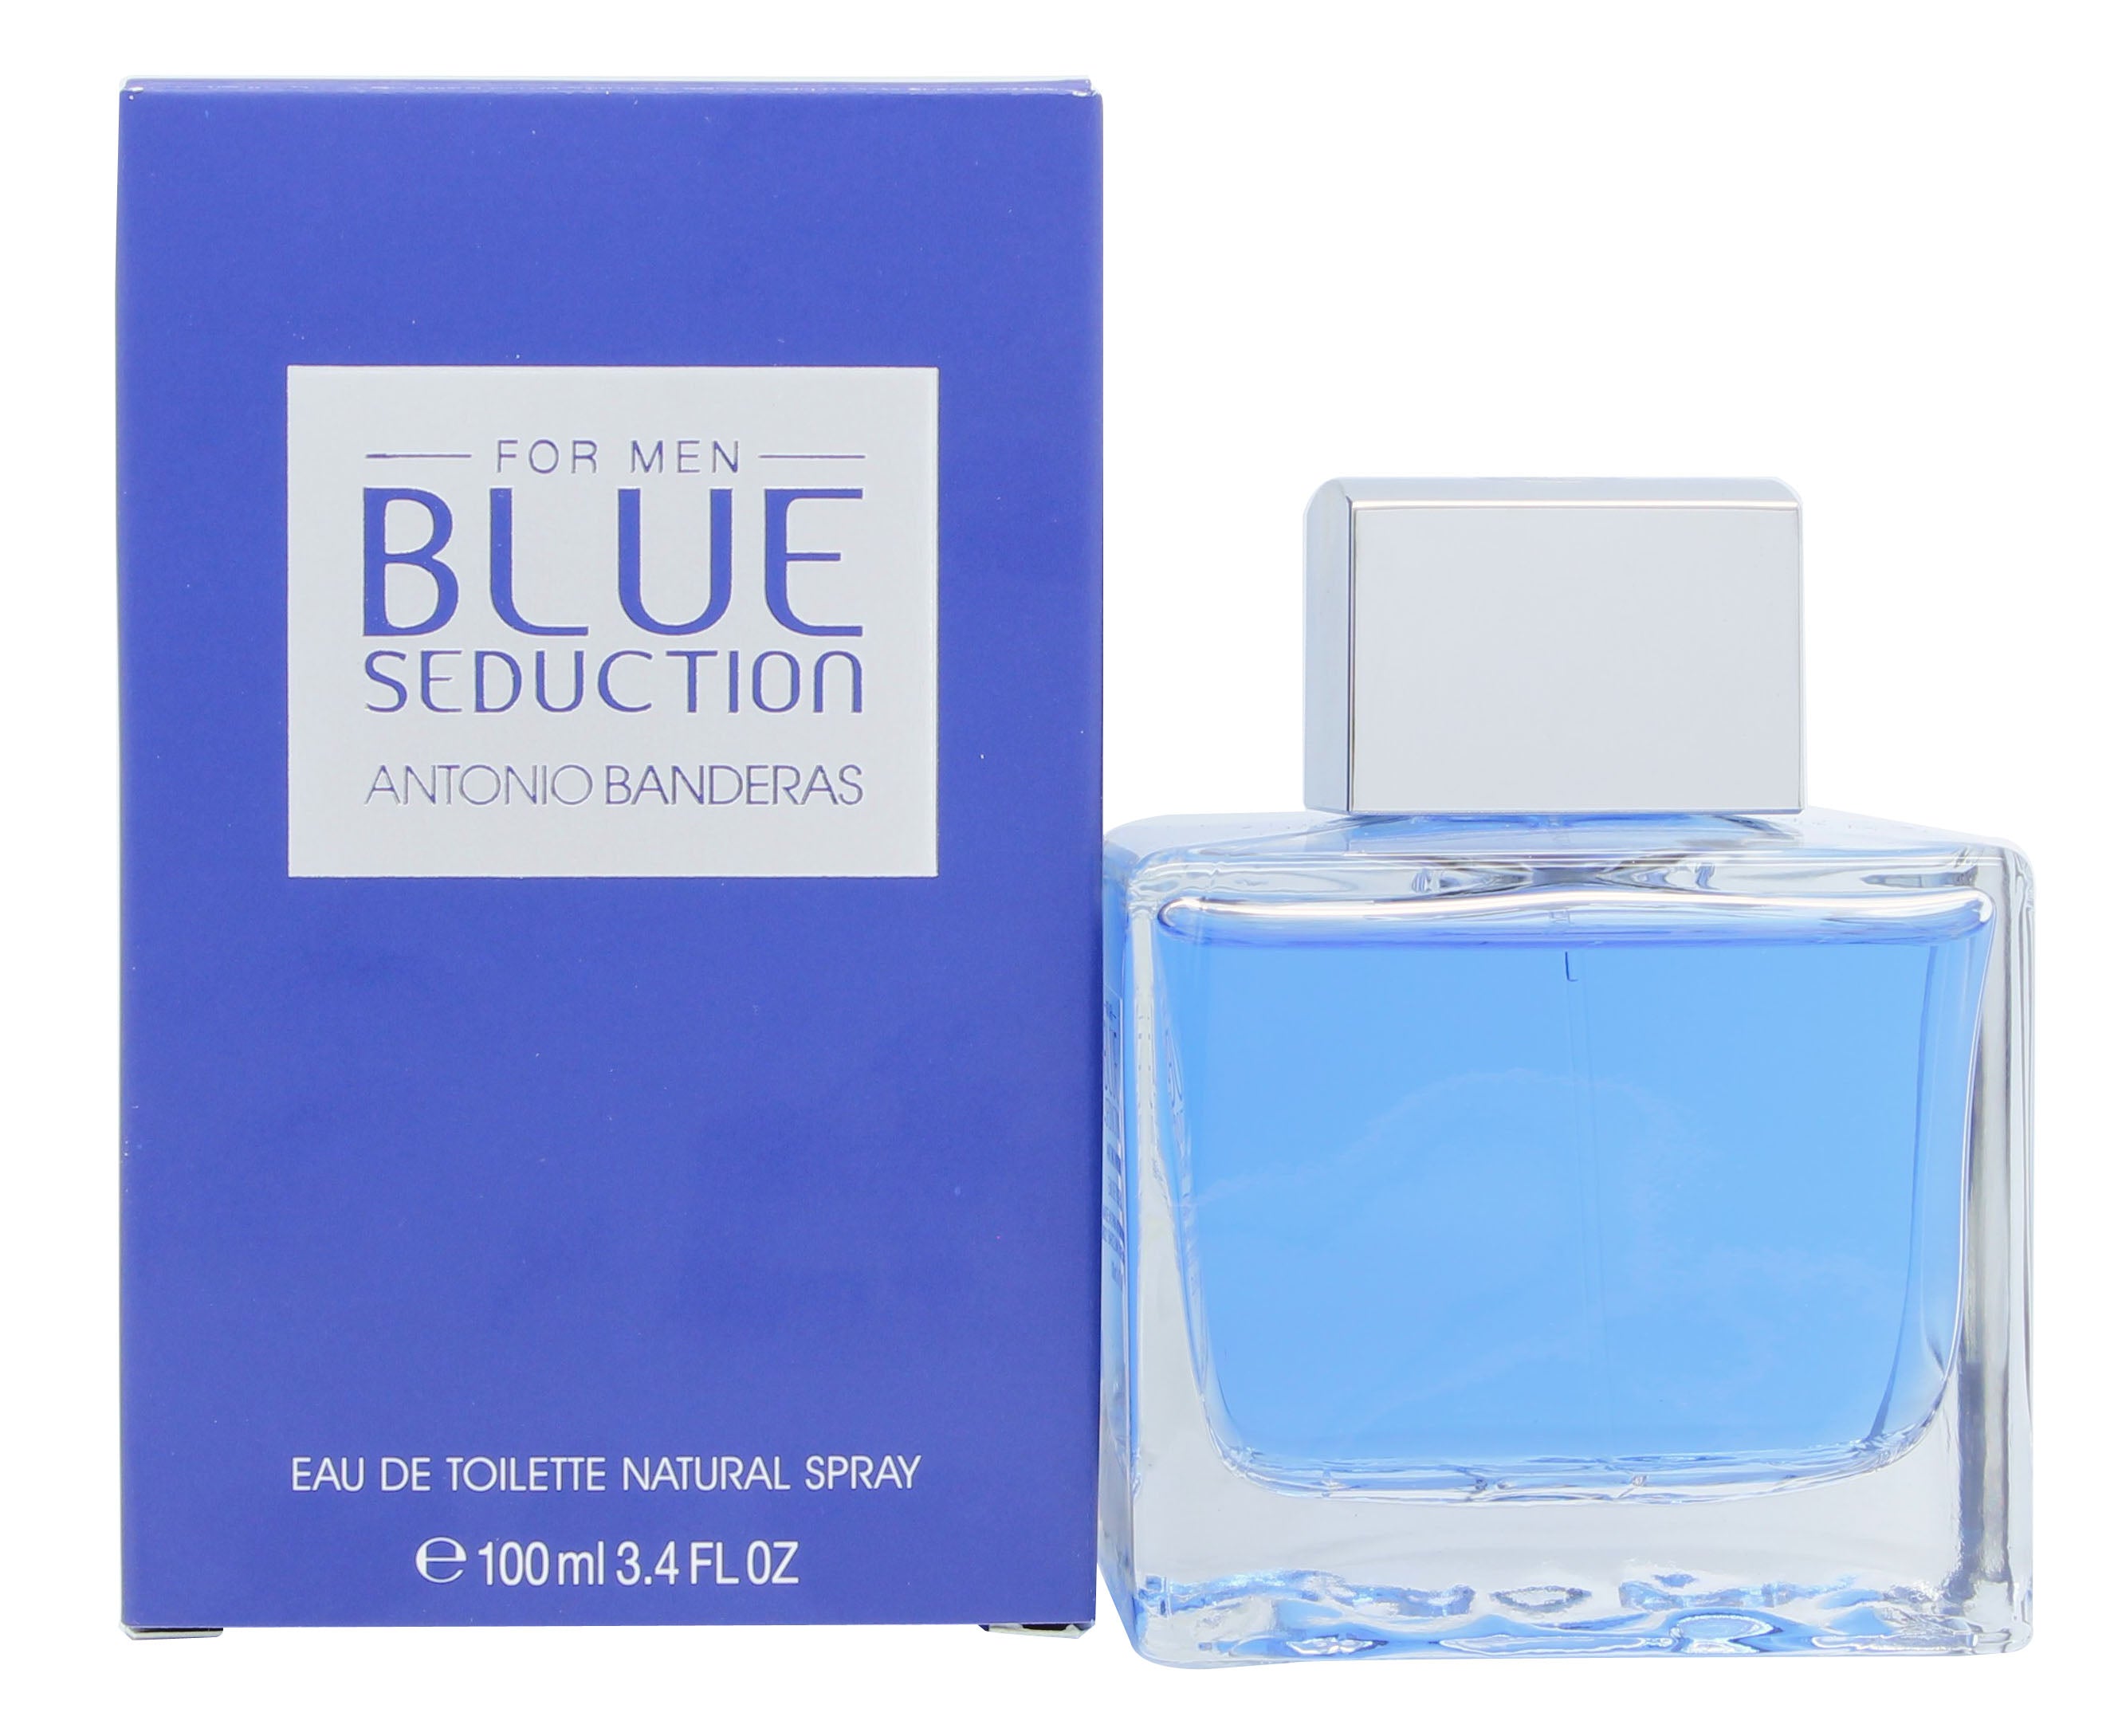 View Antonio Banderas Blue Seduction Eau de Toilette 100ml Spray information